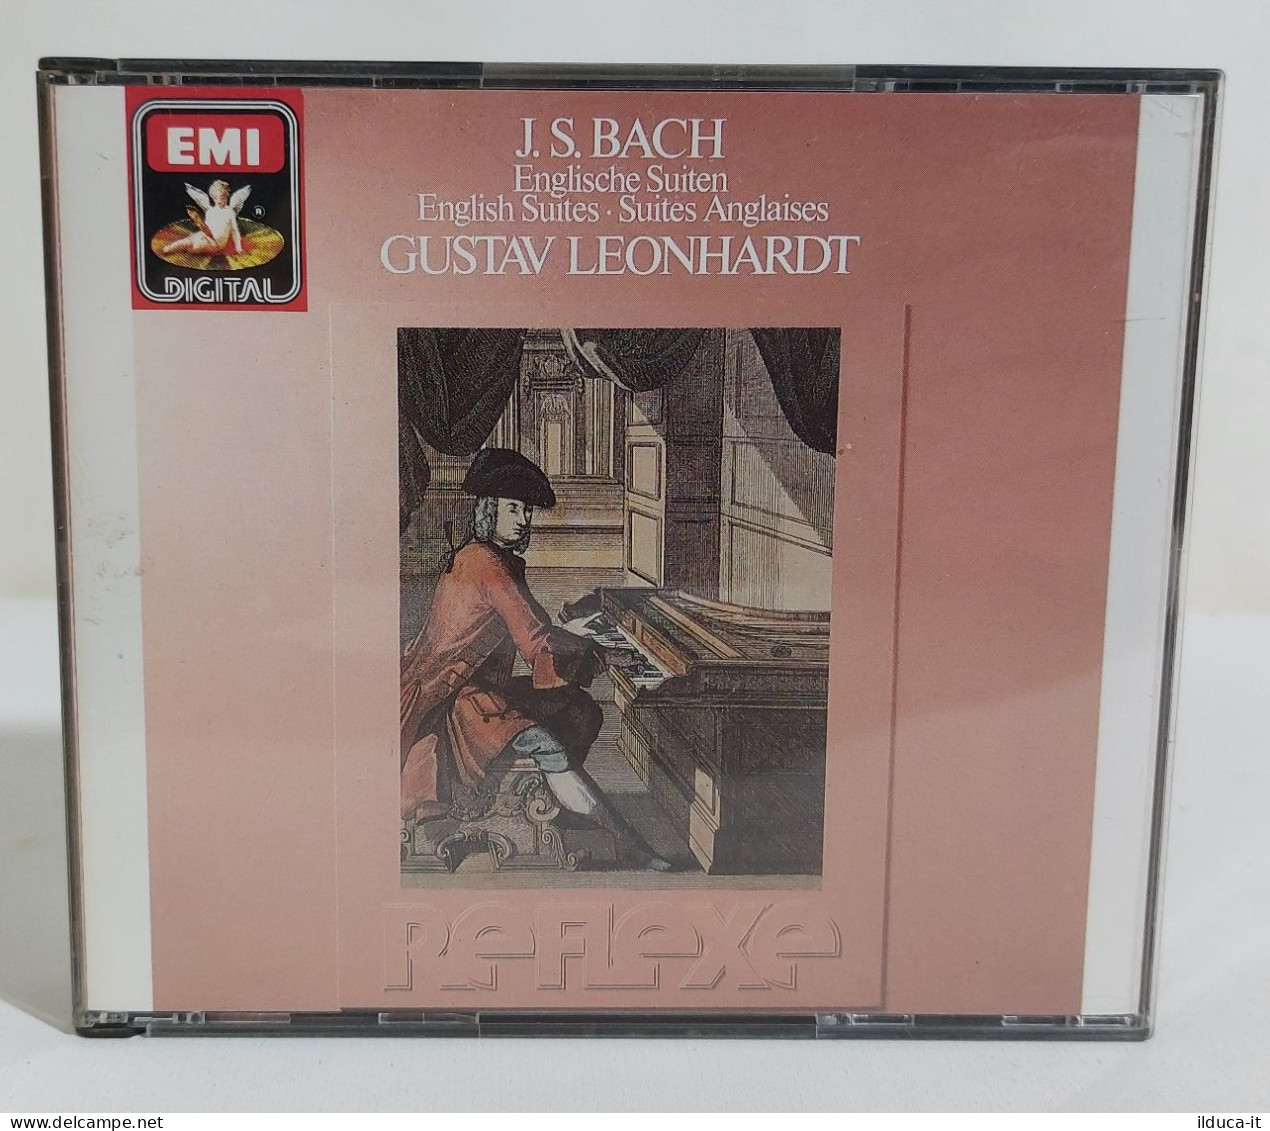 33487 Doppio CD - Gustav Leonhardt - J. S. Bach; Englische Suiten - Angel 1985 - Opere